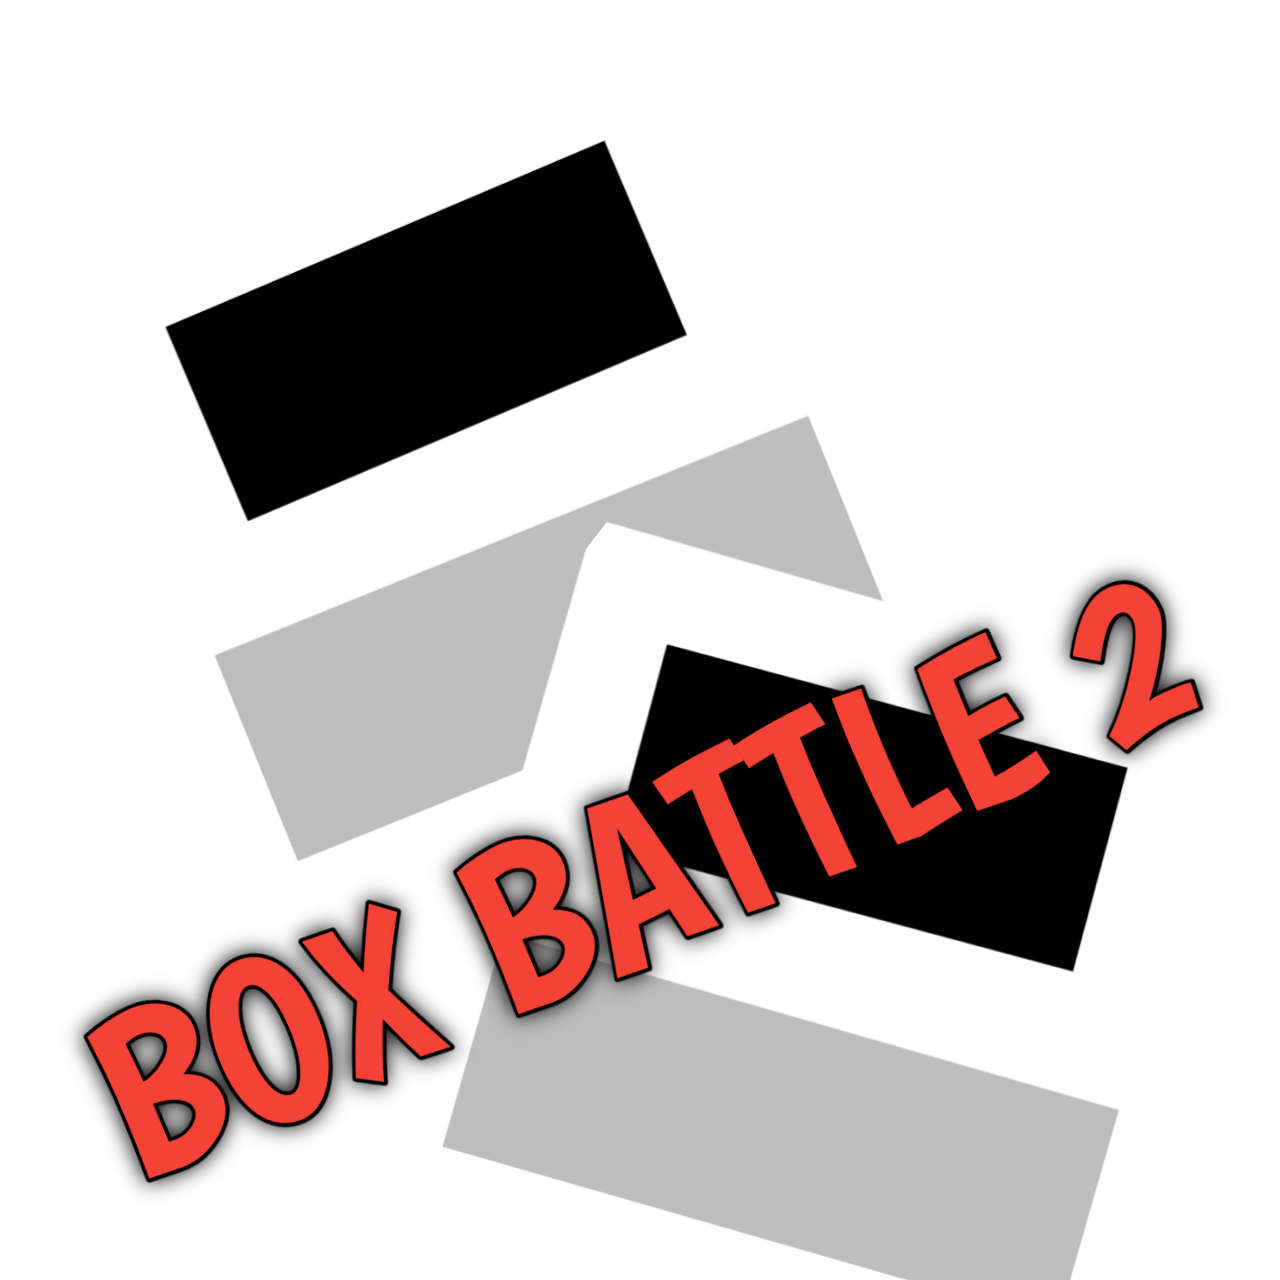 BoxBattle2-3